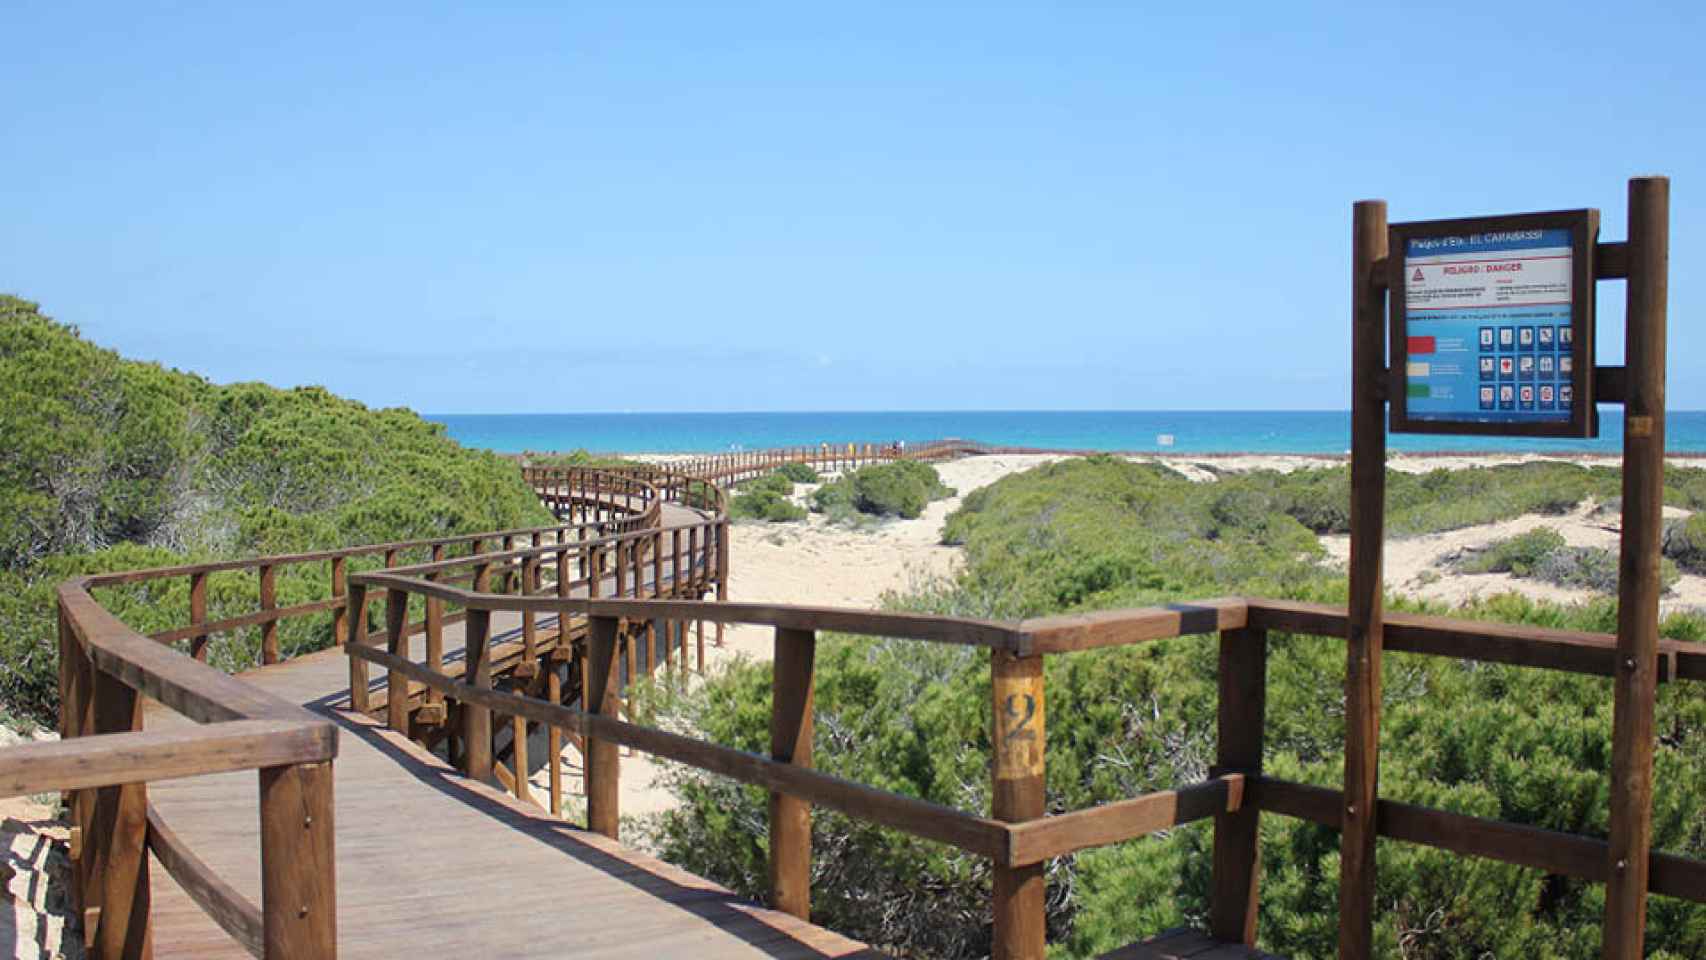 Playa del Carabassí.